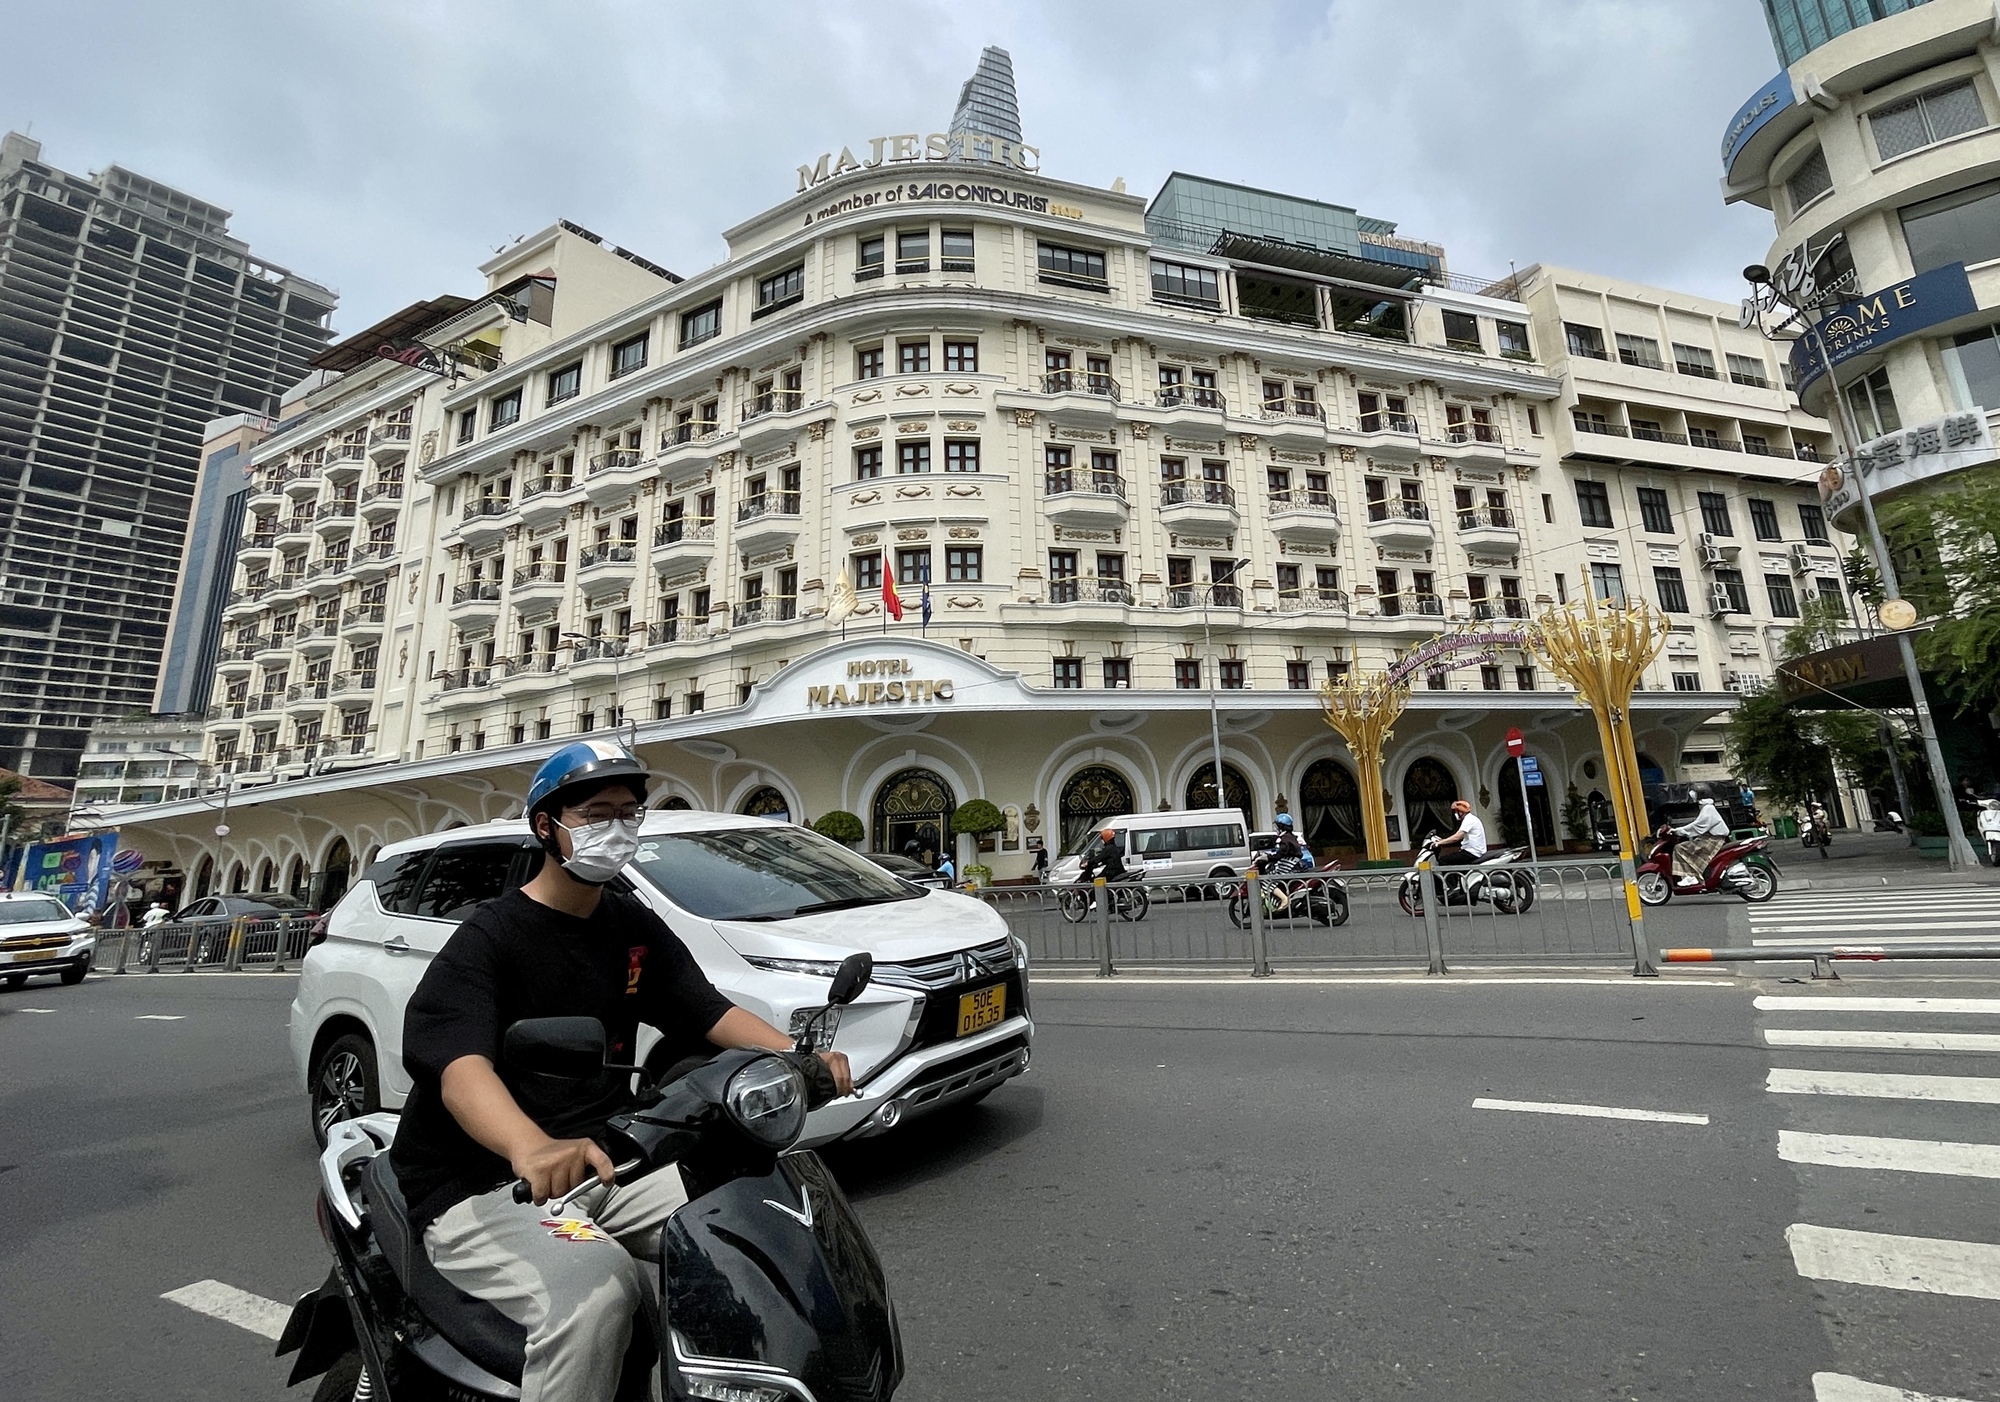 Hàng hiệu xa xỉ, khách sạn 5 sao, thiên đường mua sắm chen nhau trên con đường dát vàng ở Sài Gòn - Ảnh 5.